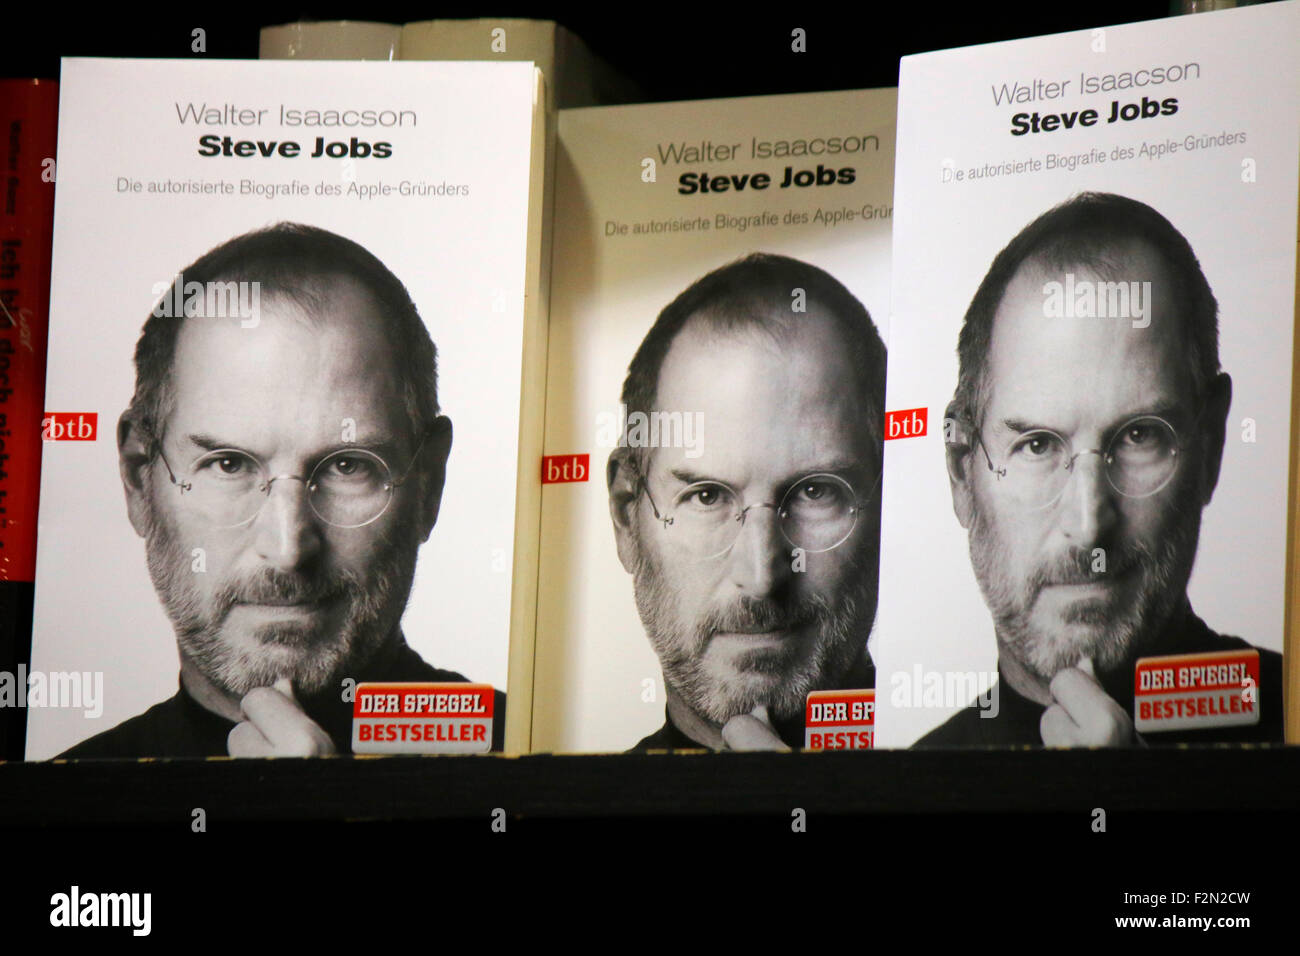 Deckung Einer Biographie schlug Steve Jobs (von Walter Isaacson), Berlin-Mitte. Stockfoto